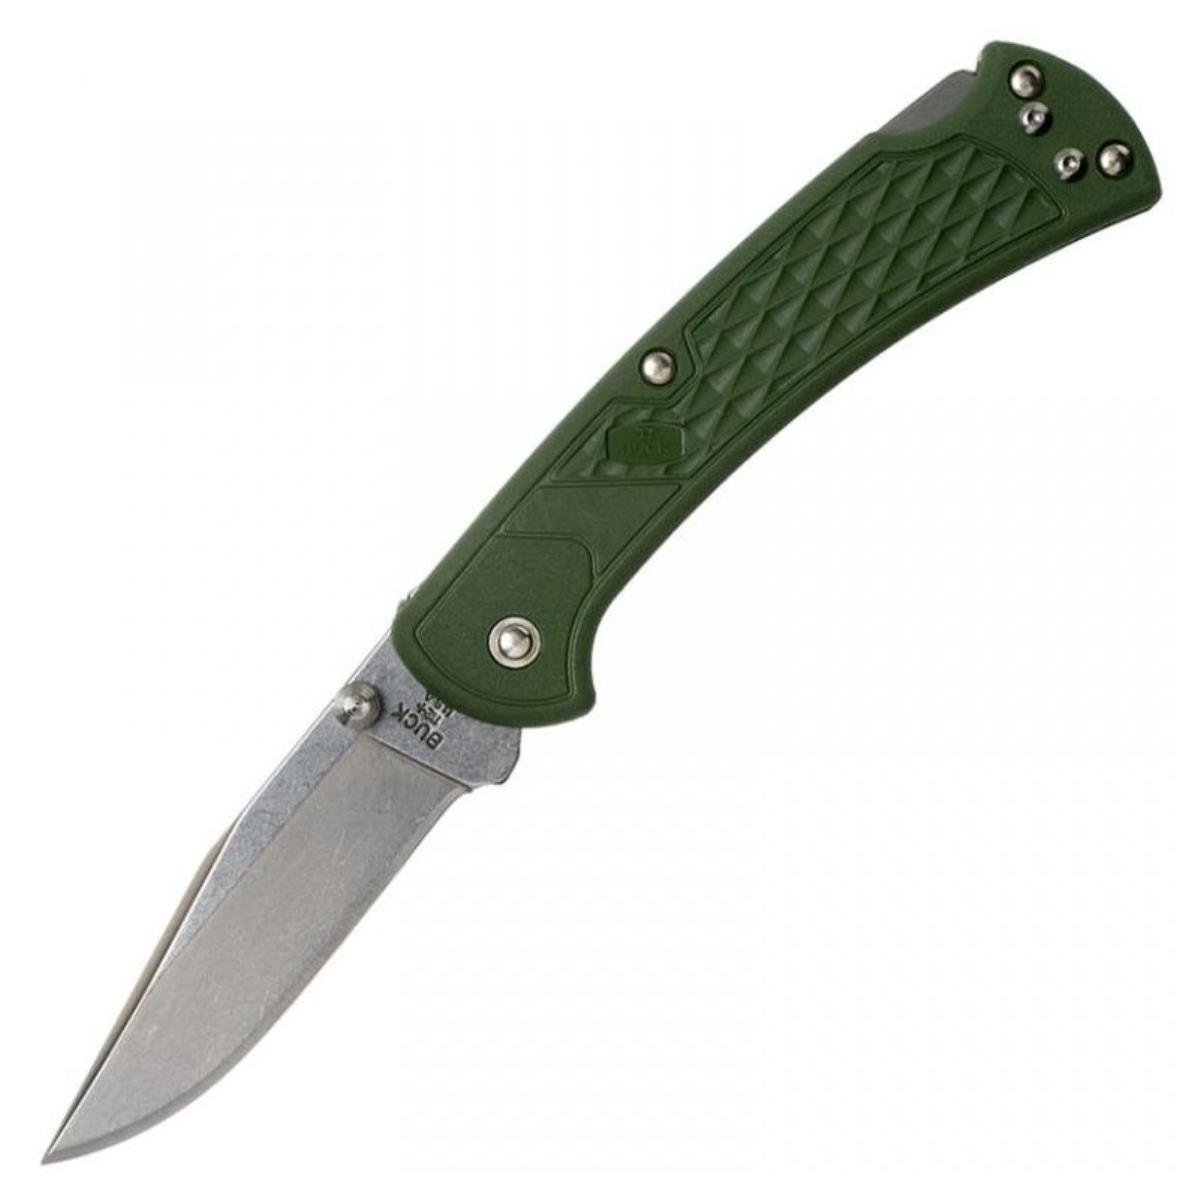 Нож складной,сталь 420HC, рукоять зеленый нейлон B0112ODS2 112 Slim Select  Buck Knives нож складной филейный opinel 10 vri folding slim bubinga